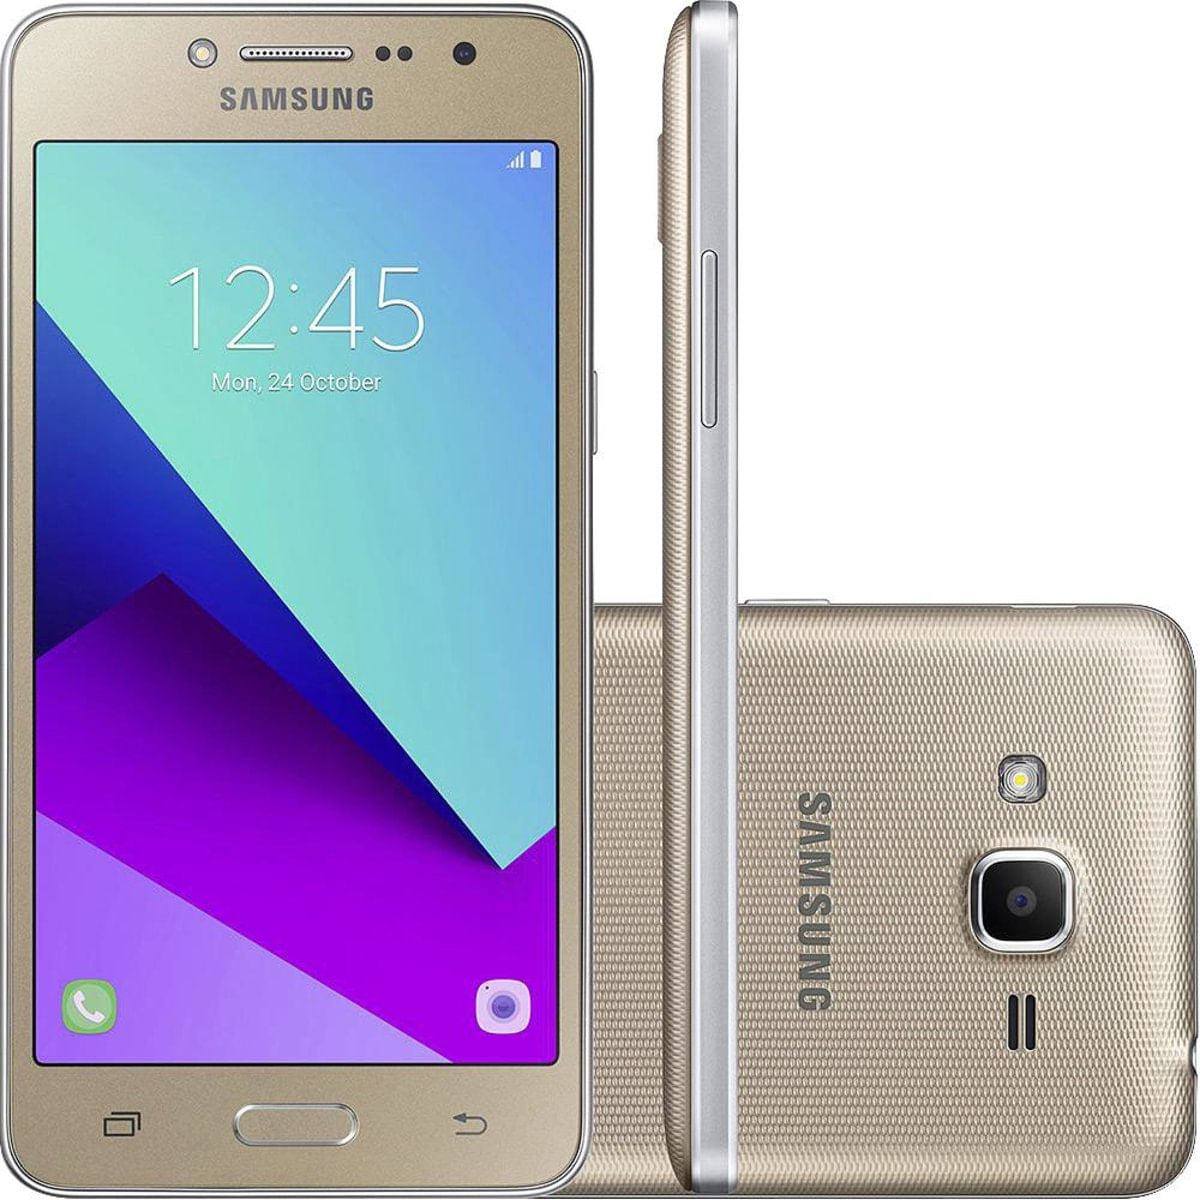 Celular Smartphone Samsung Galaxy J2 Prime Tv G532m 16gb Dourado Oi - Dual Chip